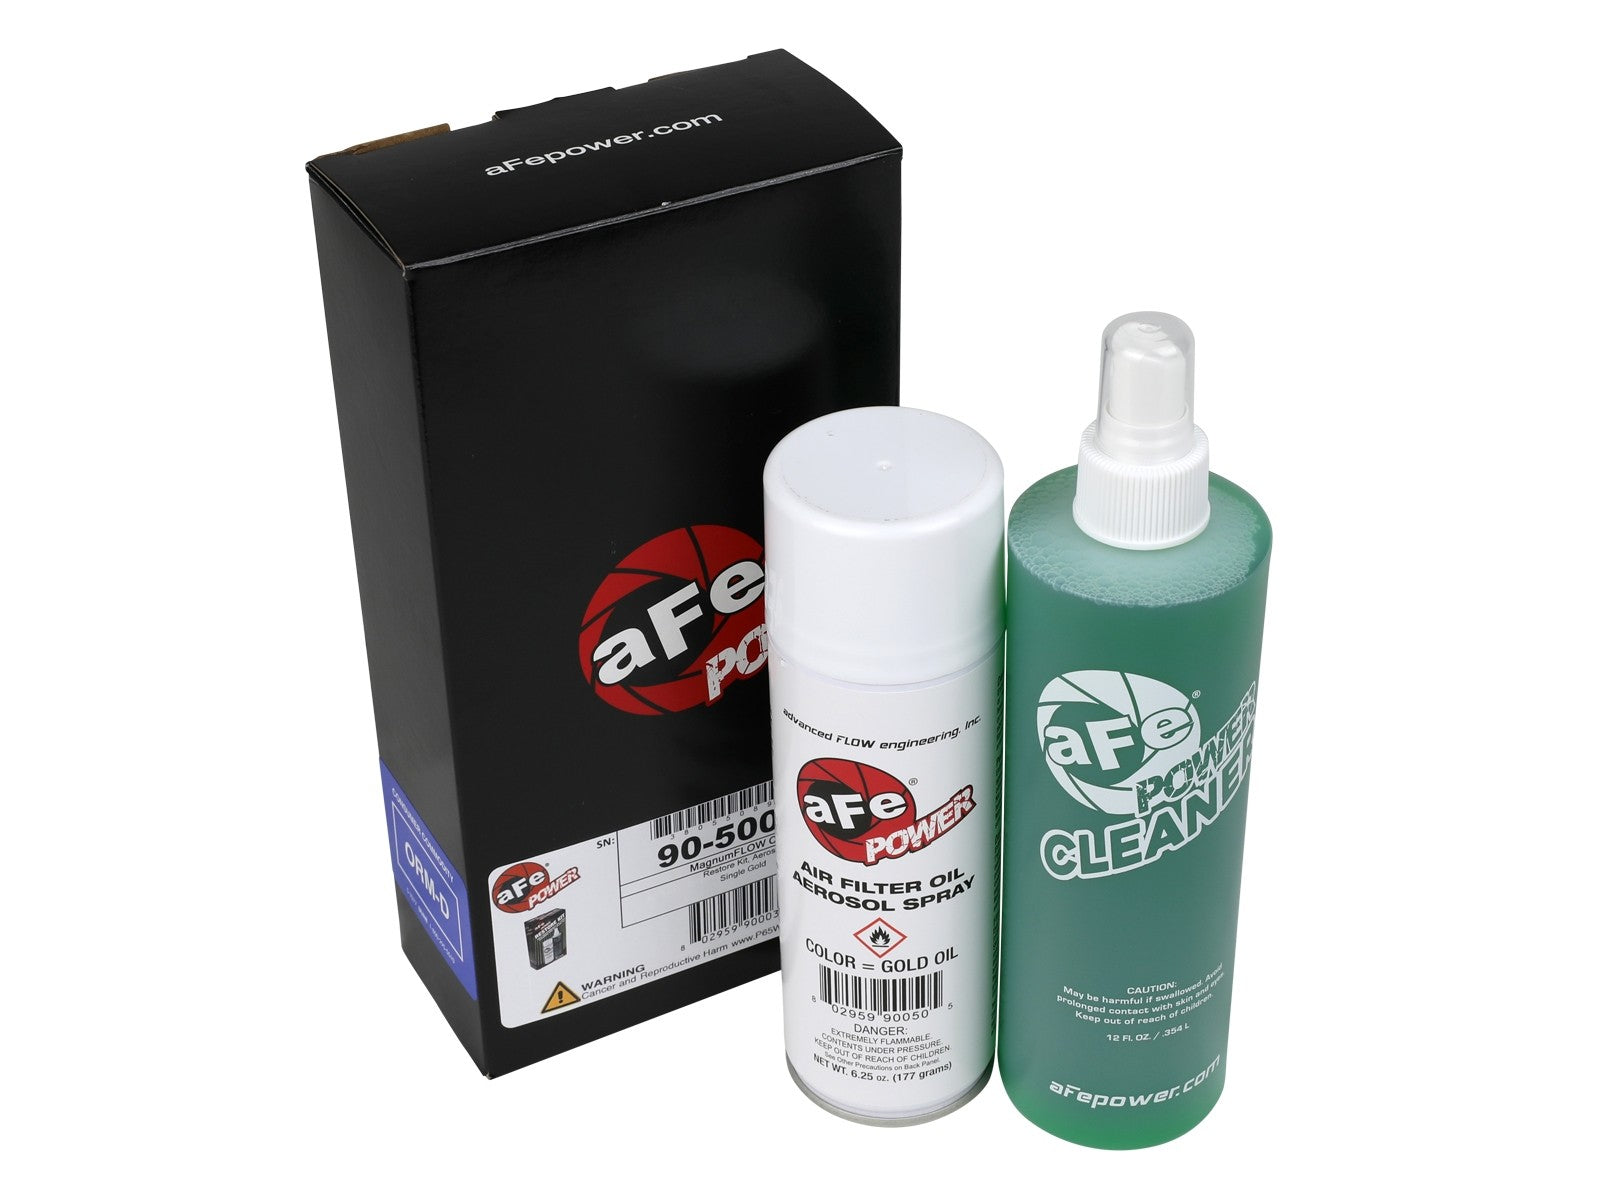 aFe Air Filter Restore Kit: 6.25 oz Gold Oil & 12 oz Power Cleaner